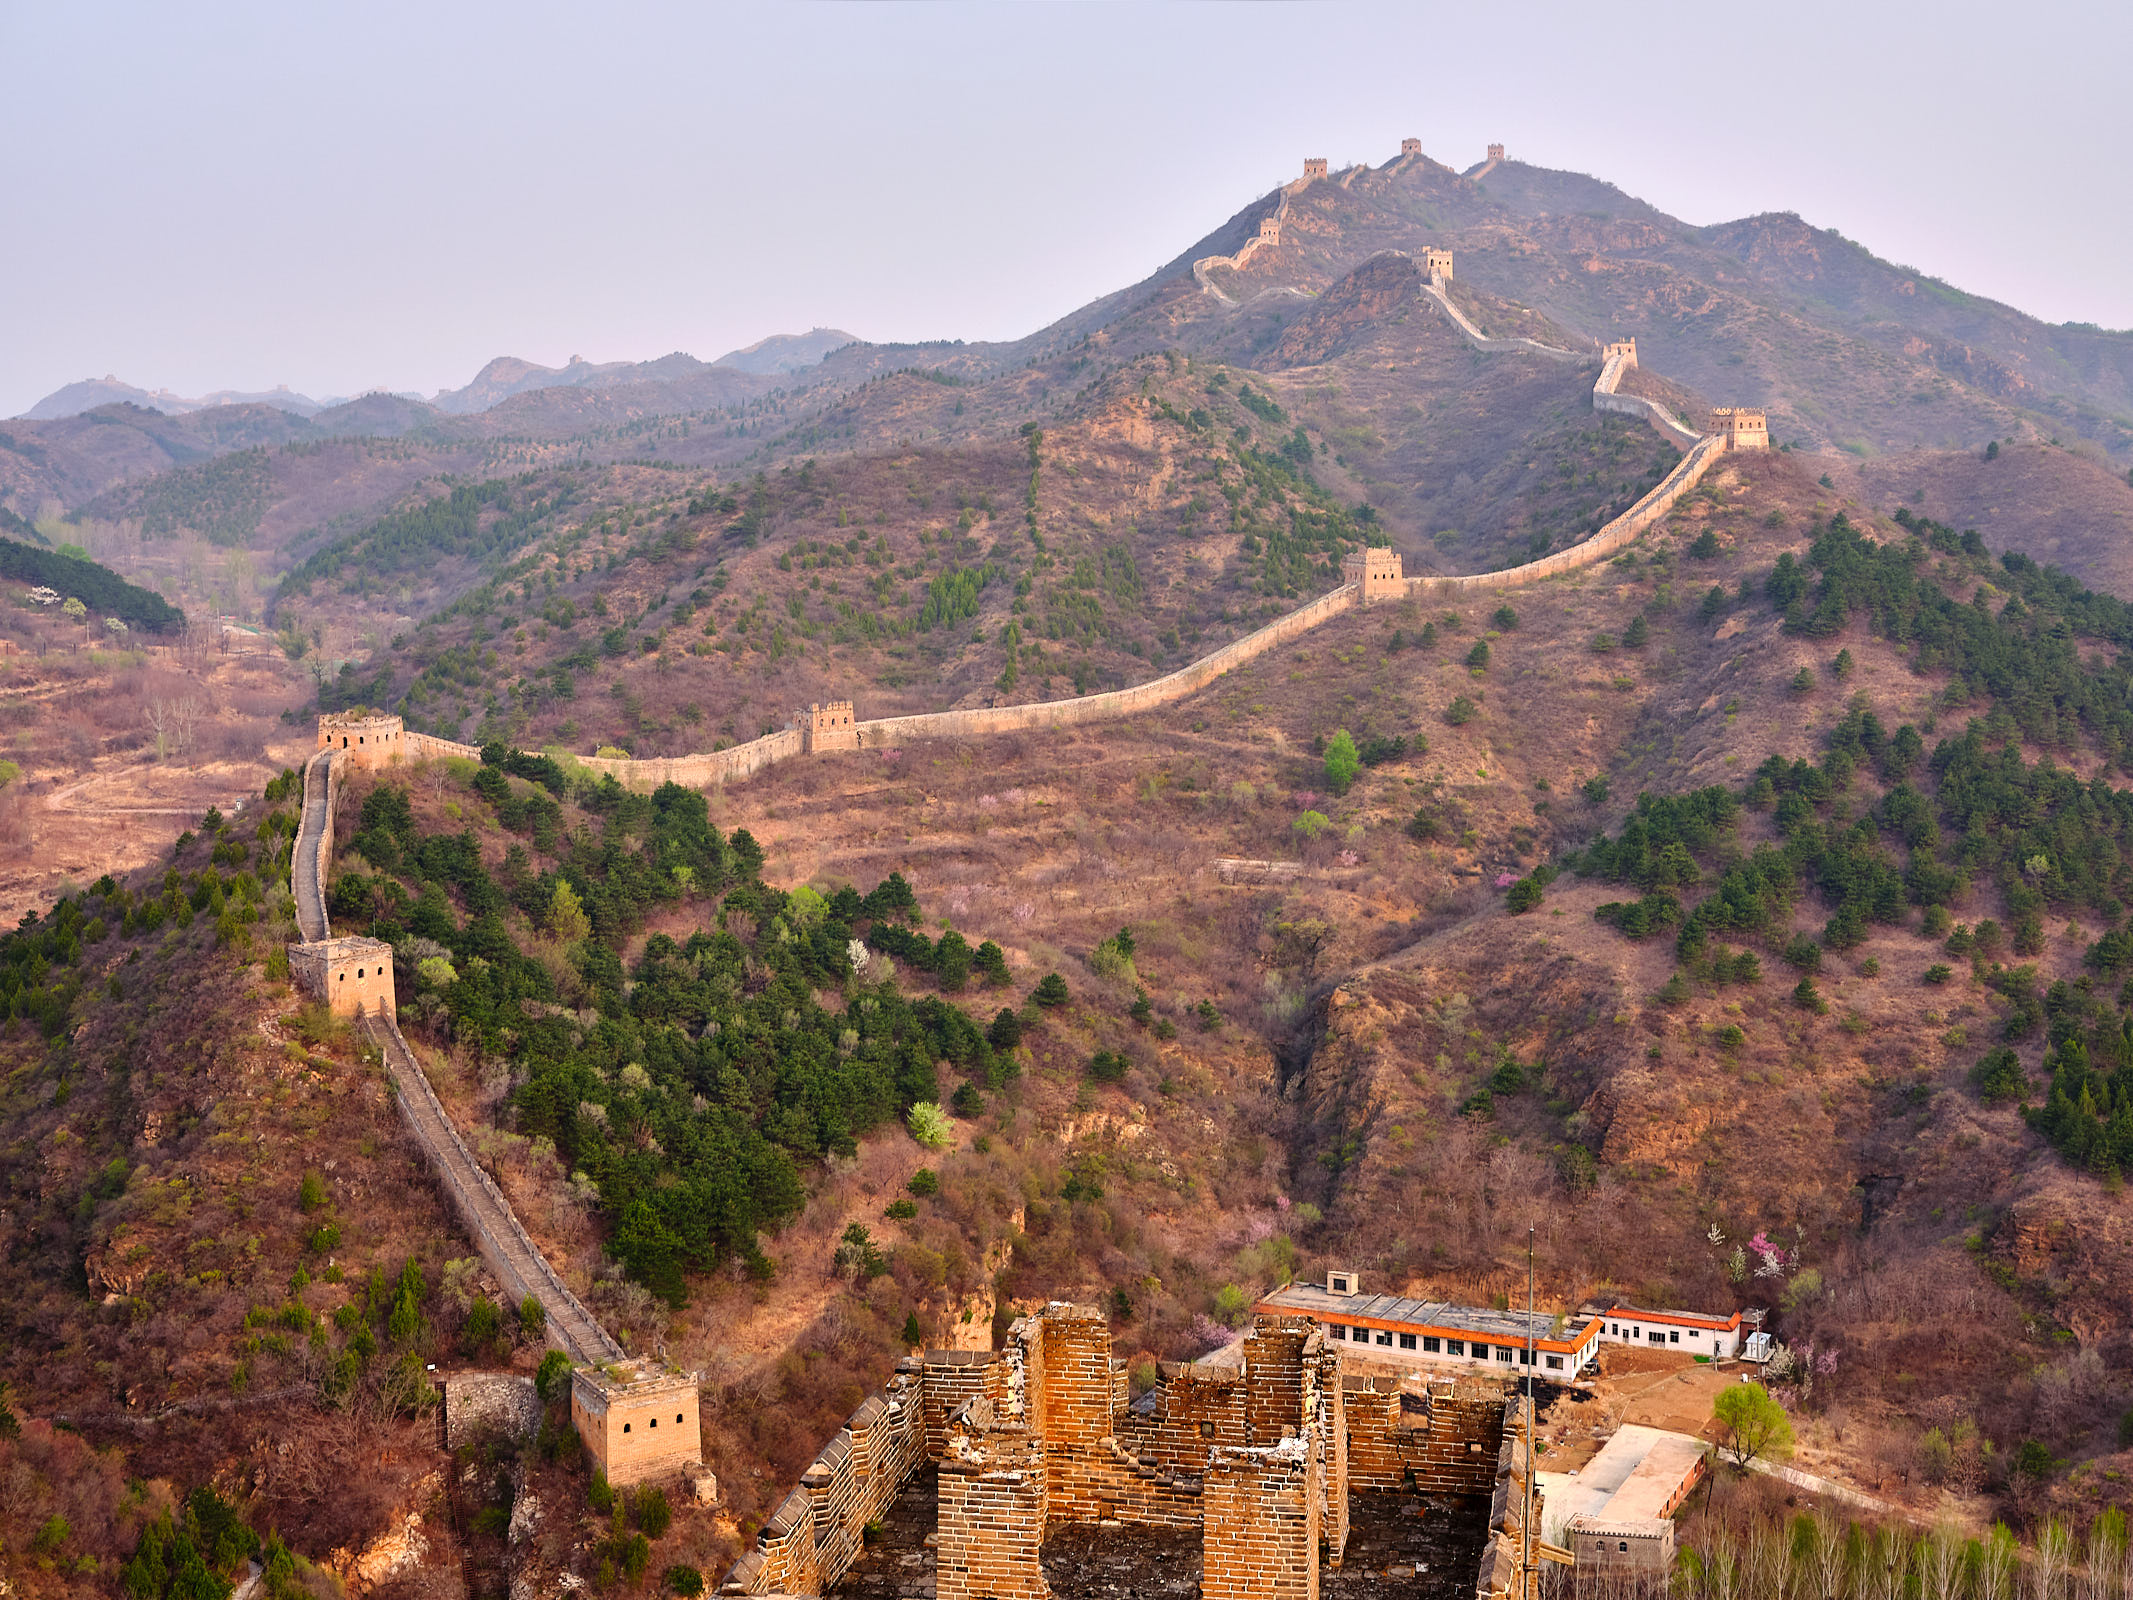 Simatai Great Wall of China at sunrise